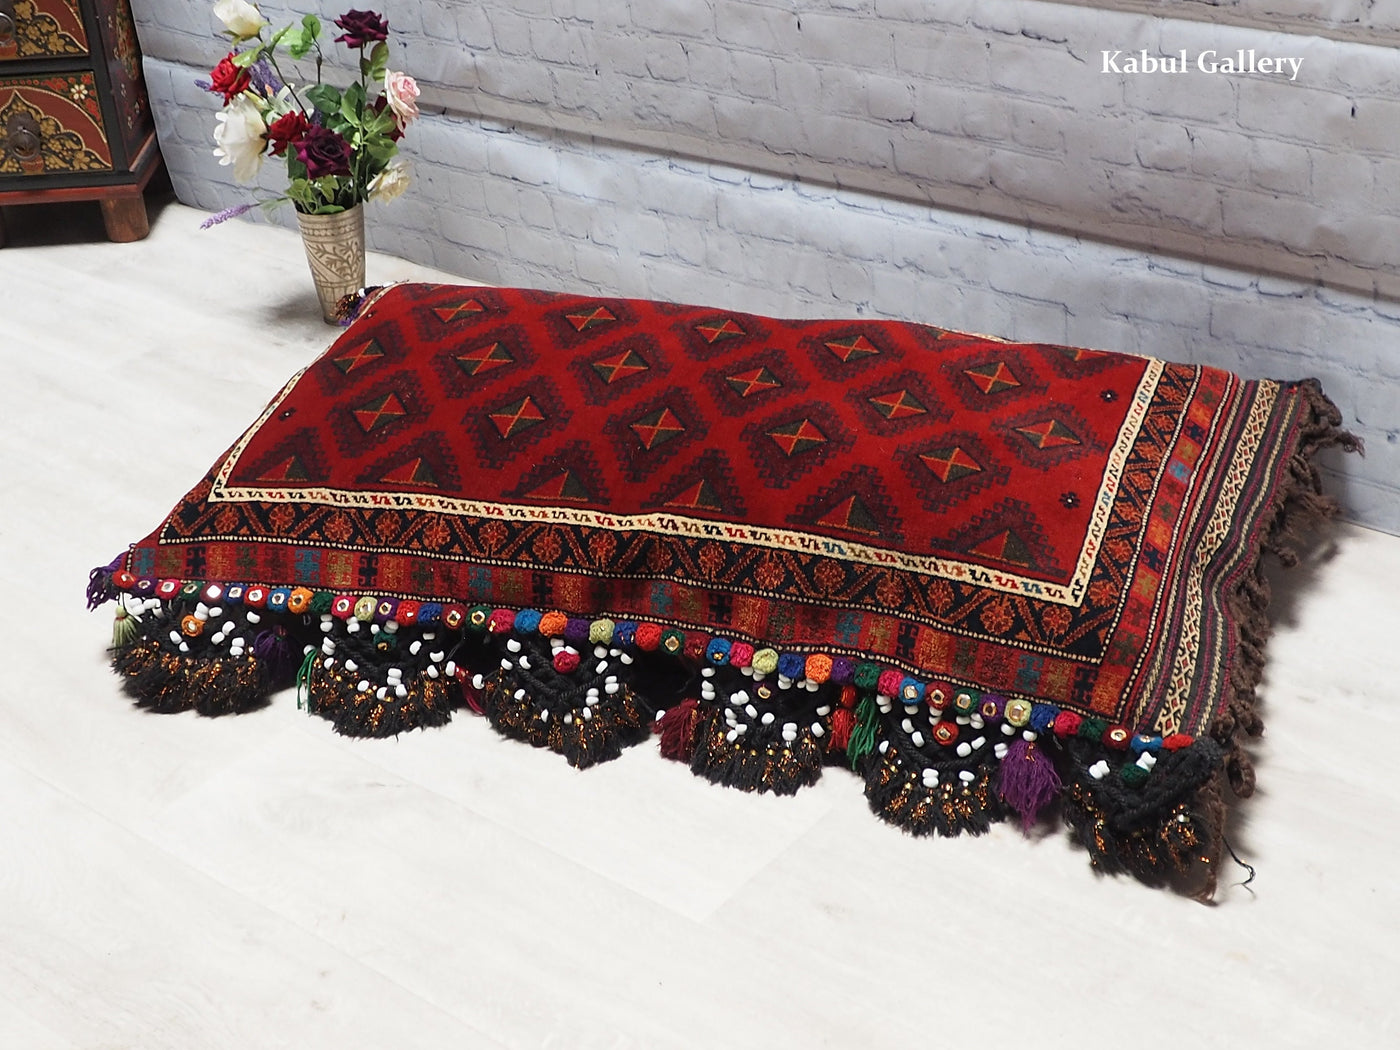 117x65 cm antik orient Afghan belochi Teppich nomaden sitzkissen bodenkissen  Bohemian cushion 1001-nacht Nr.22/6  Orientsbazar   